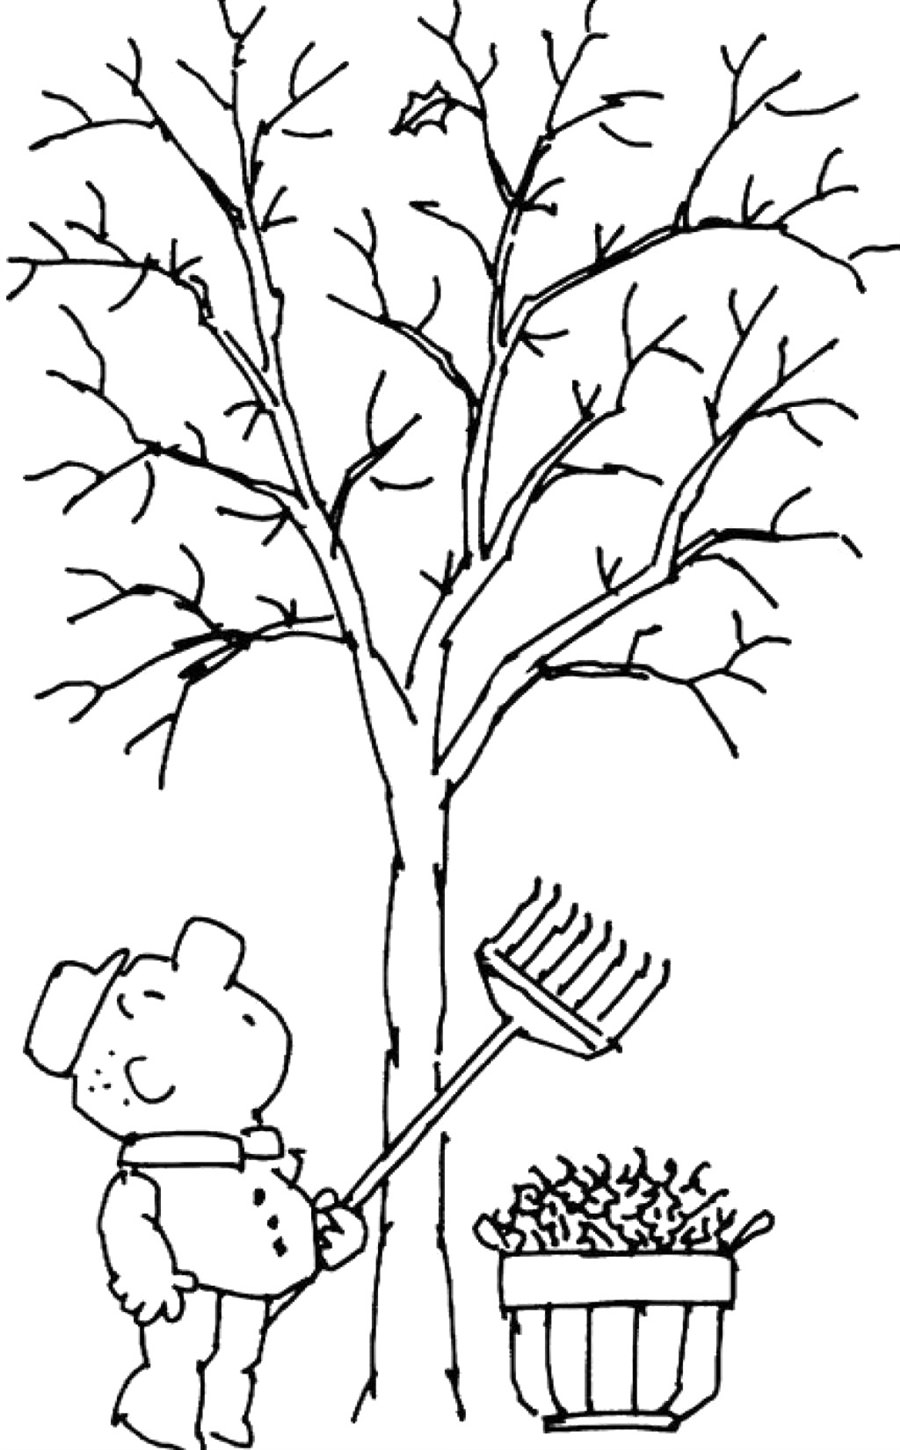 розмальовка для дітей дерево без листя